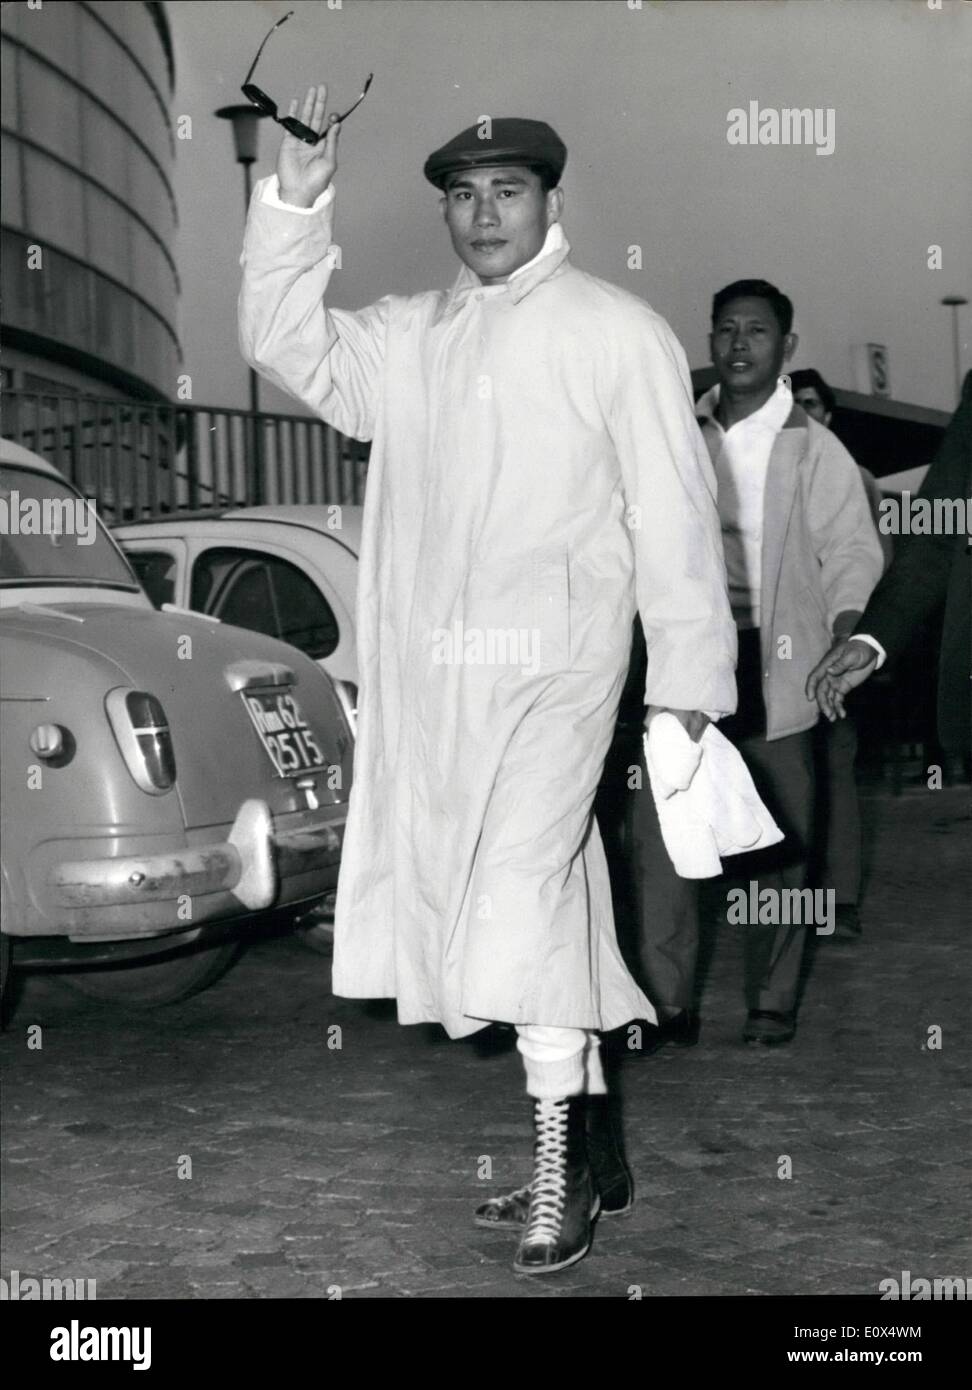 Apr. 04, 1965 - Thailandia bantam campione del mondo pone Kingpetch che incontrerà pugile italiano Salvatore Burruni campione europeo Foto Stock